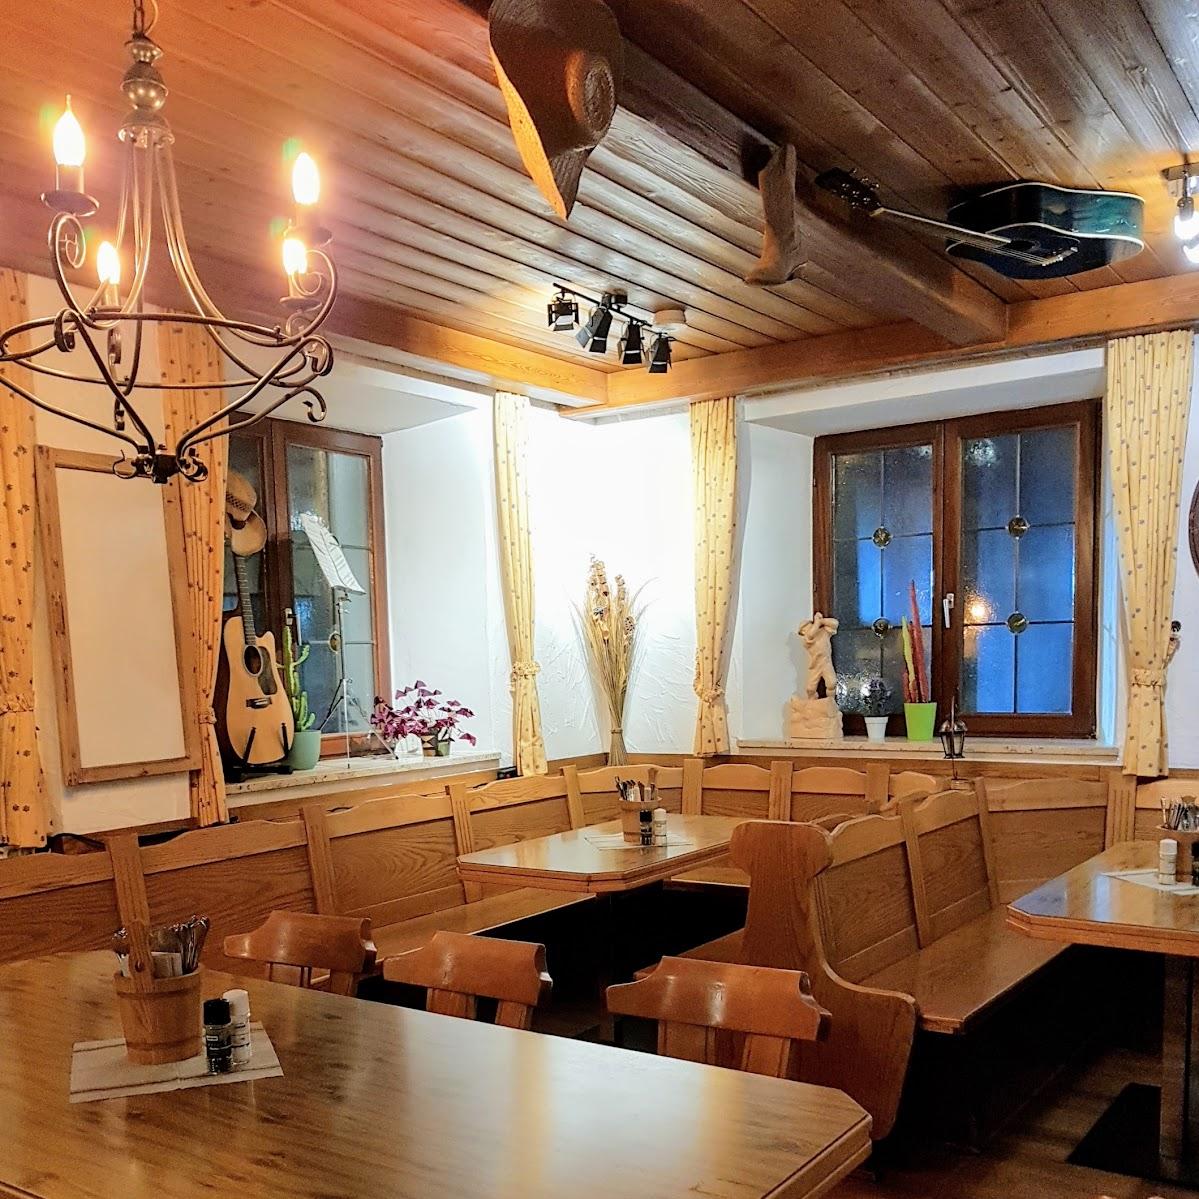 Restaurant "Gasthof zum Fuchs" in Kempten (Allgäu)